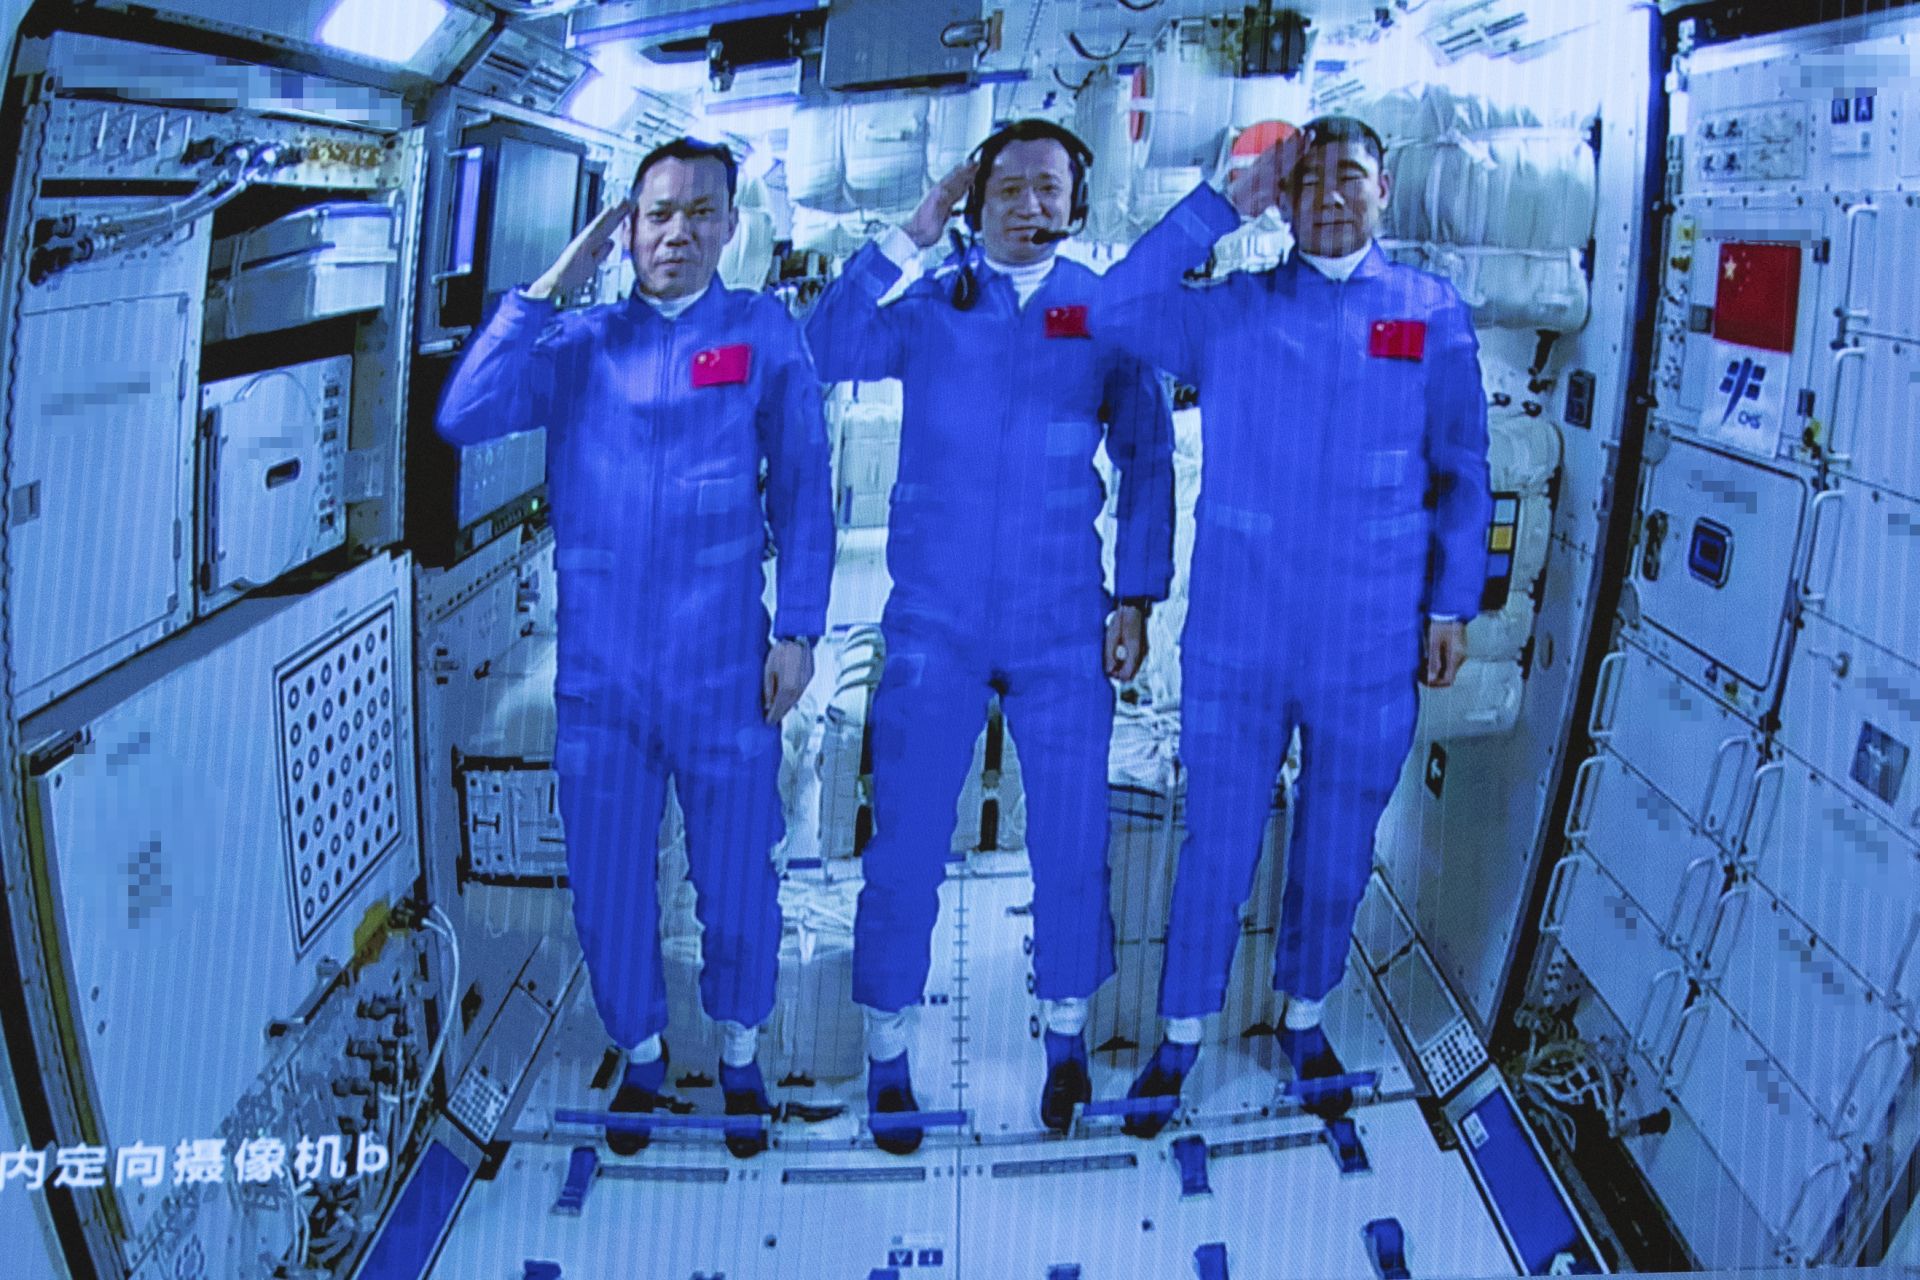 Тайконавтите на борда на Китайската космическа станция